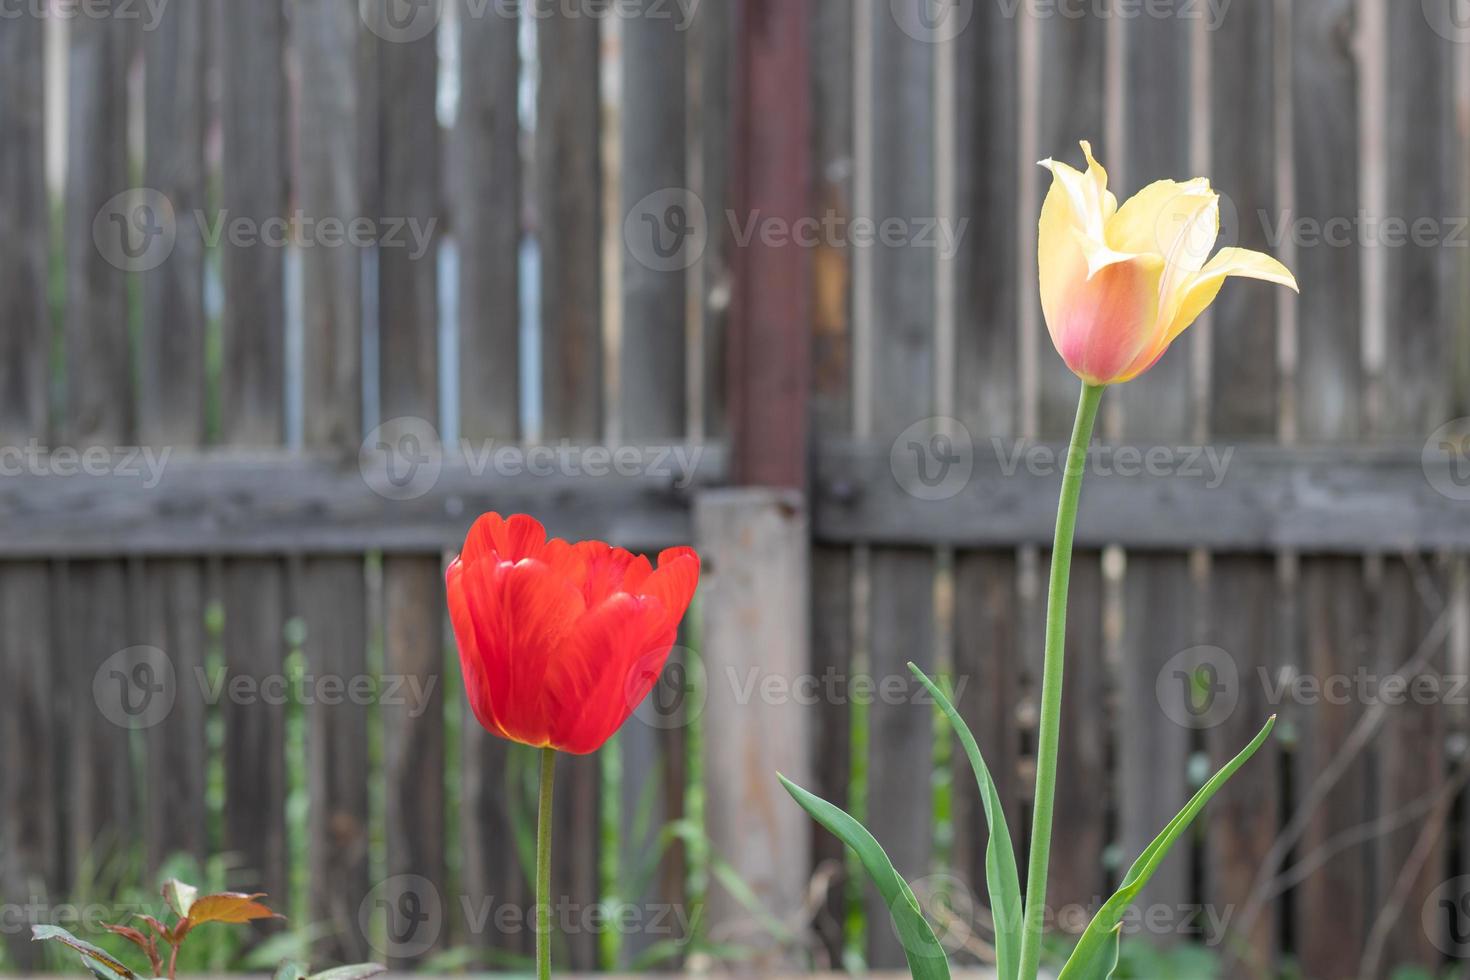 foco seletivo. duas tulipas no jardim com folhas verdes. fundo desfocado.  uma flor que cresce entre a grama em um dia quente e ensolarado. primavera  e Páscoa fundo natural com tulipa. 17380598